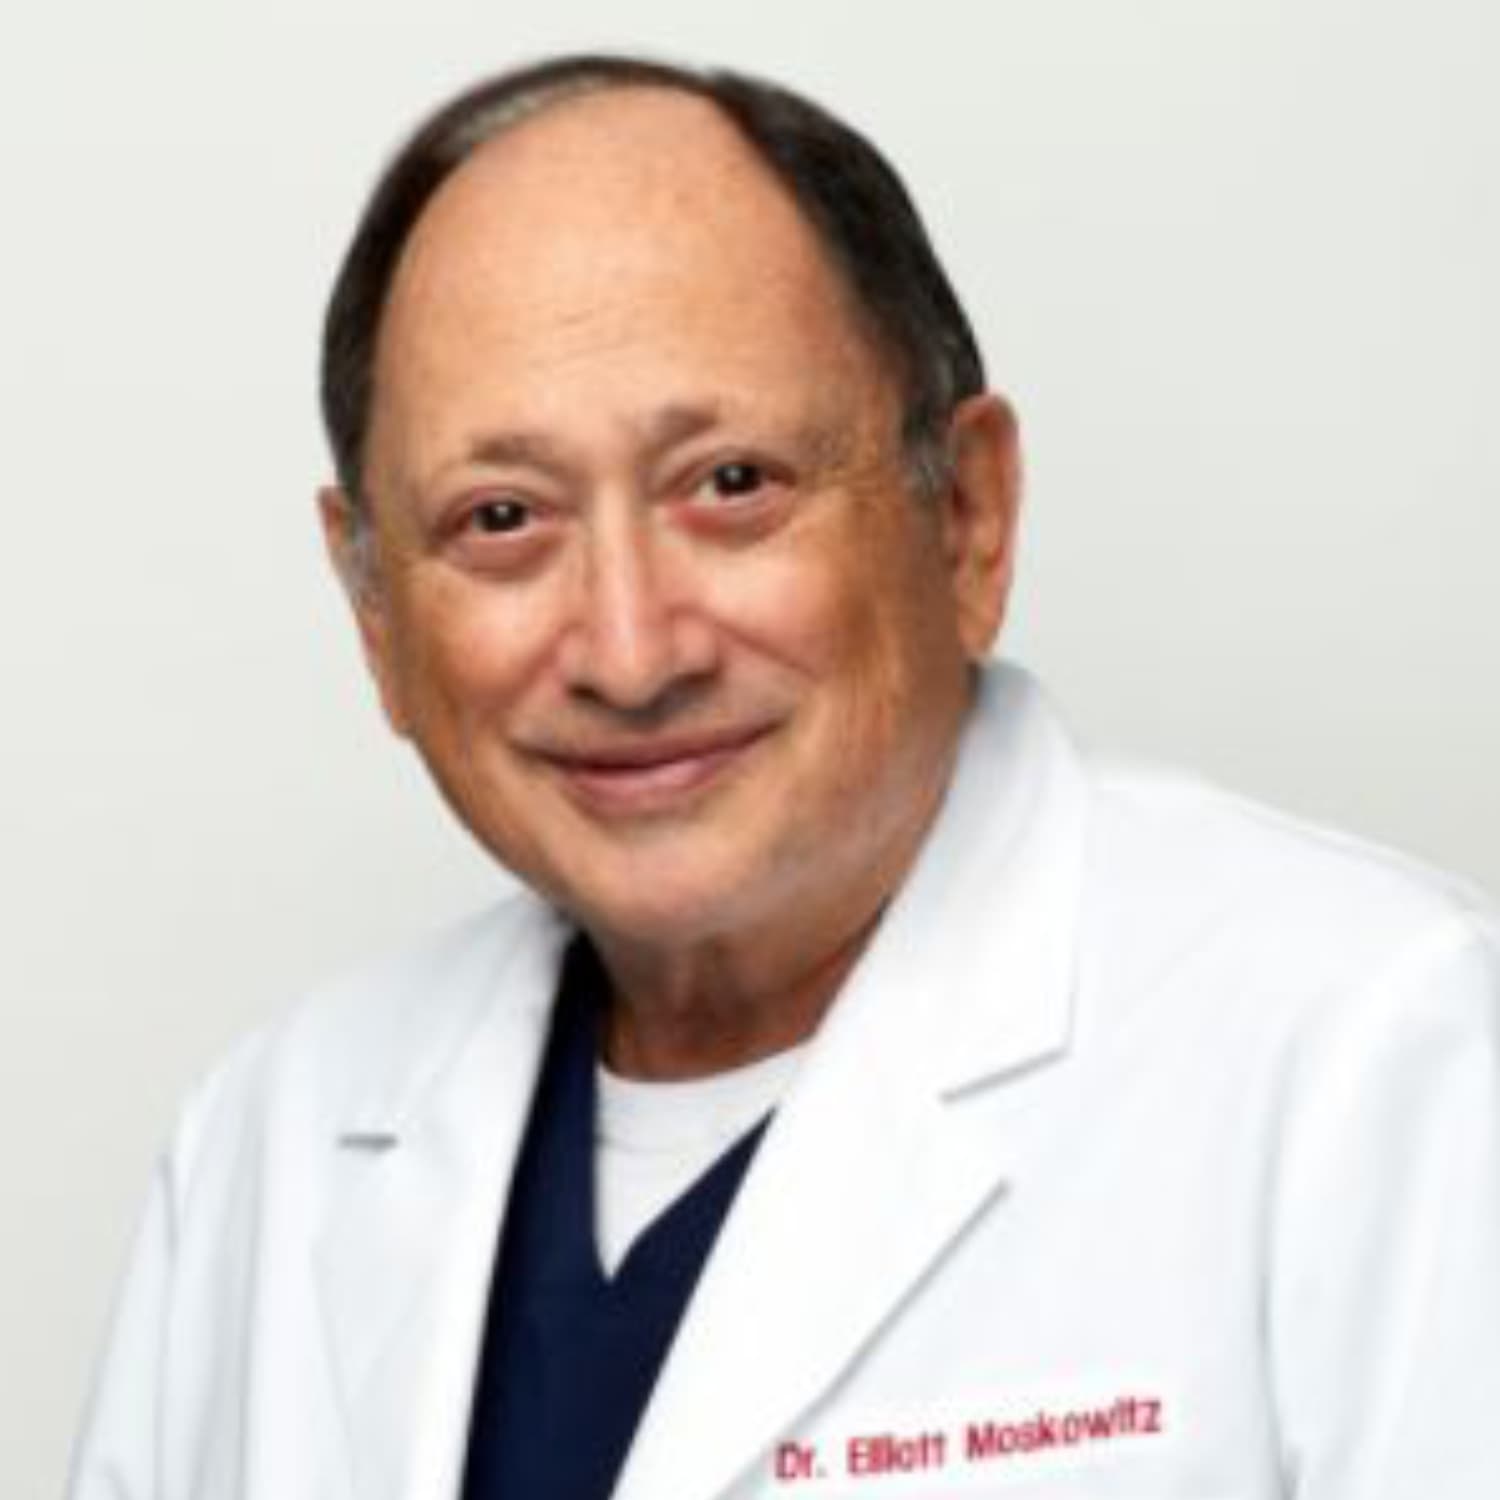 Dr. Moskowitz Headshot